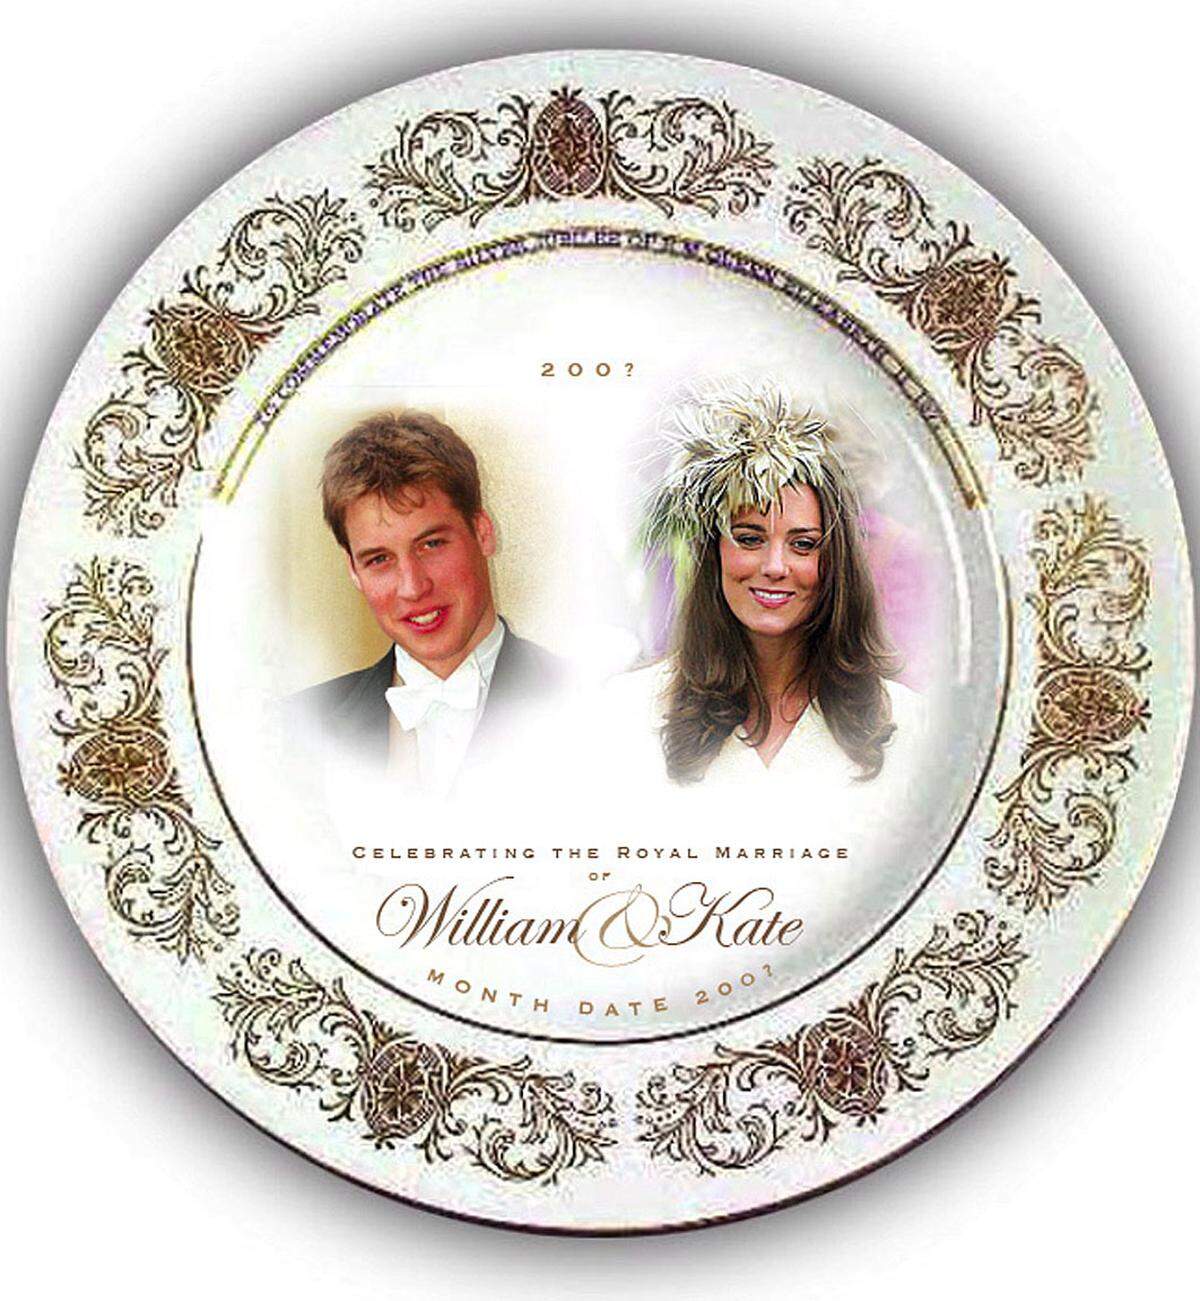 Die Billigkaufhauskette Woolworth geht Ende 2006 schon so weit, dass sie 100.000 Souvenirs wie Tassen, Teller und Geschirrttücher mit den Fotos der beiden drucken lässt, um bei einer Verlobung sofort reagieren zu können.